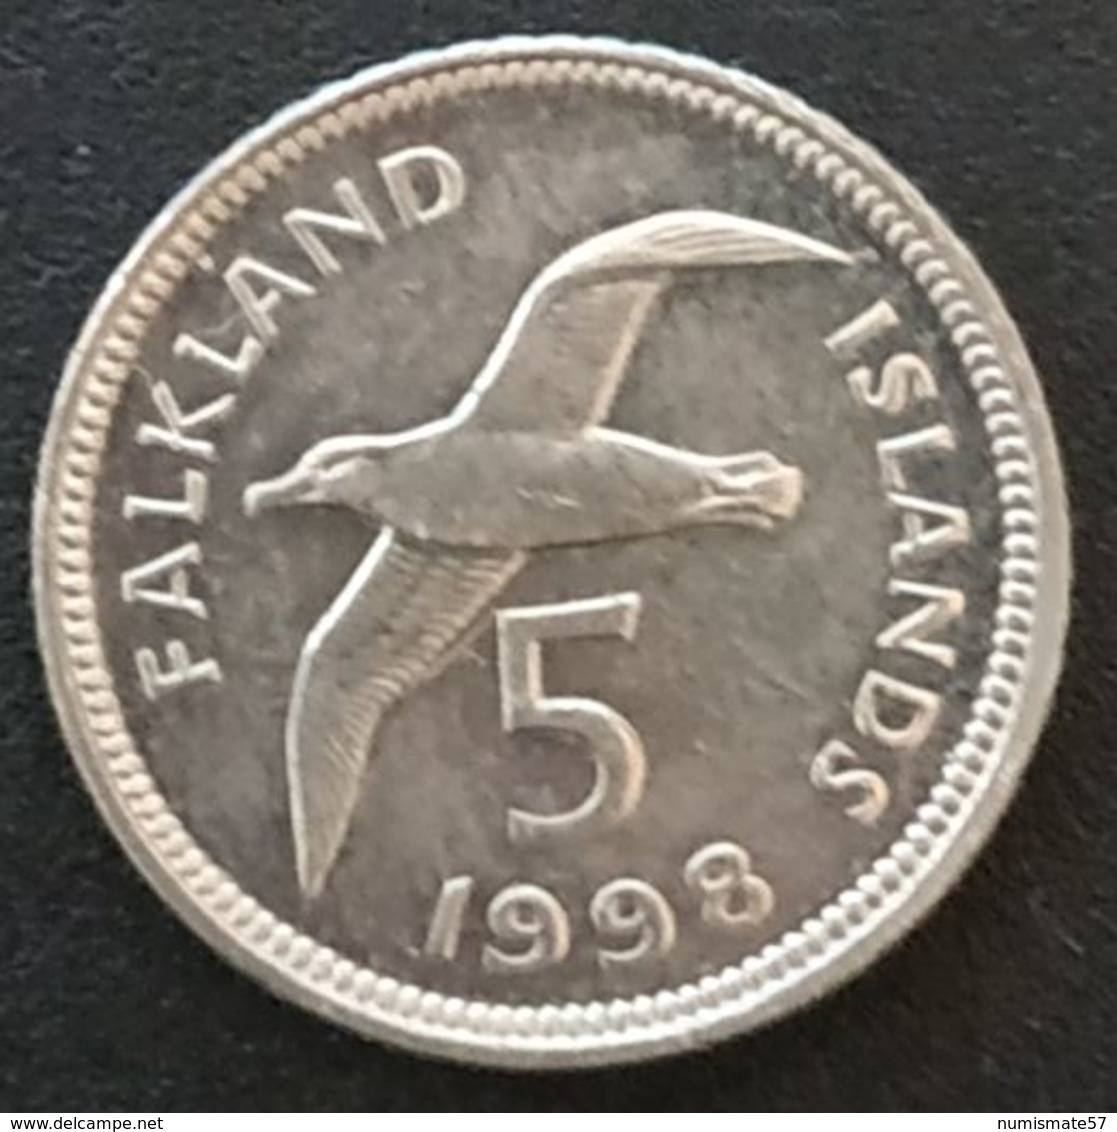 FALKLAND ISLANDS - 5 PENCE 1998 - Elizabeth II - 2eme Effigie; Petit Module - KM 4.2 - ( Îles Malouines ) - Falkland